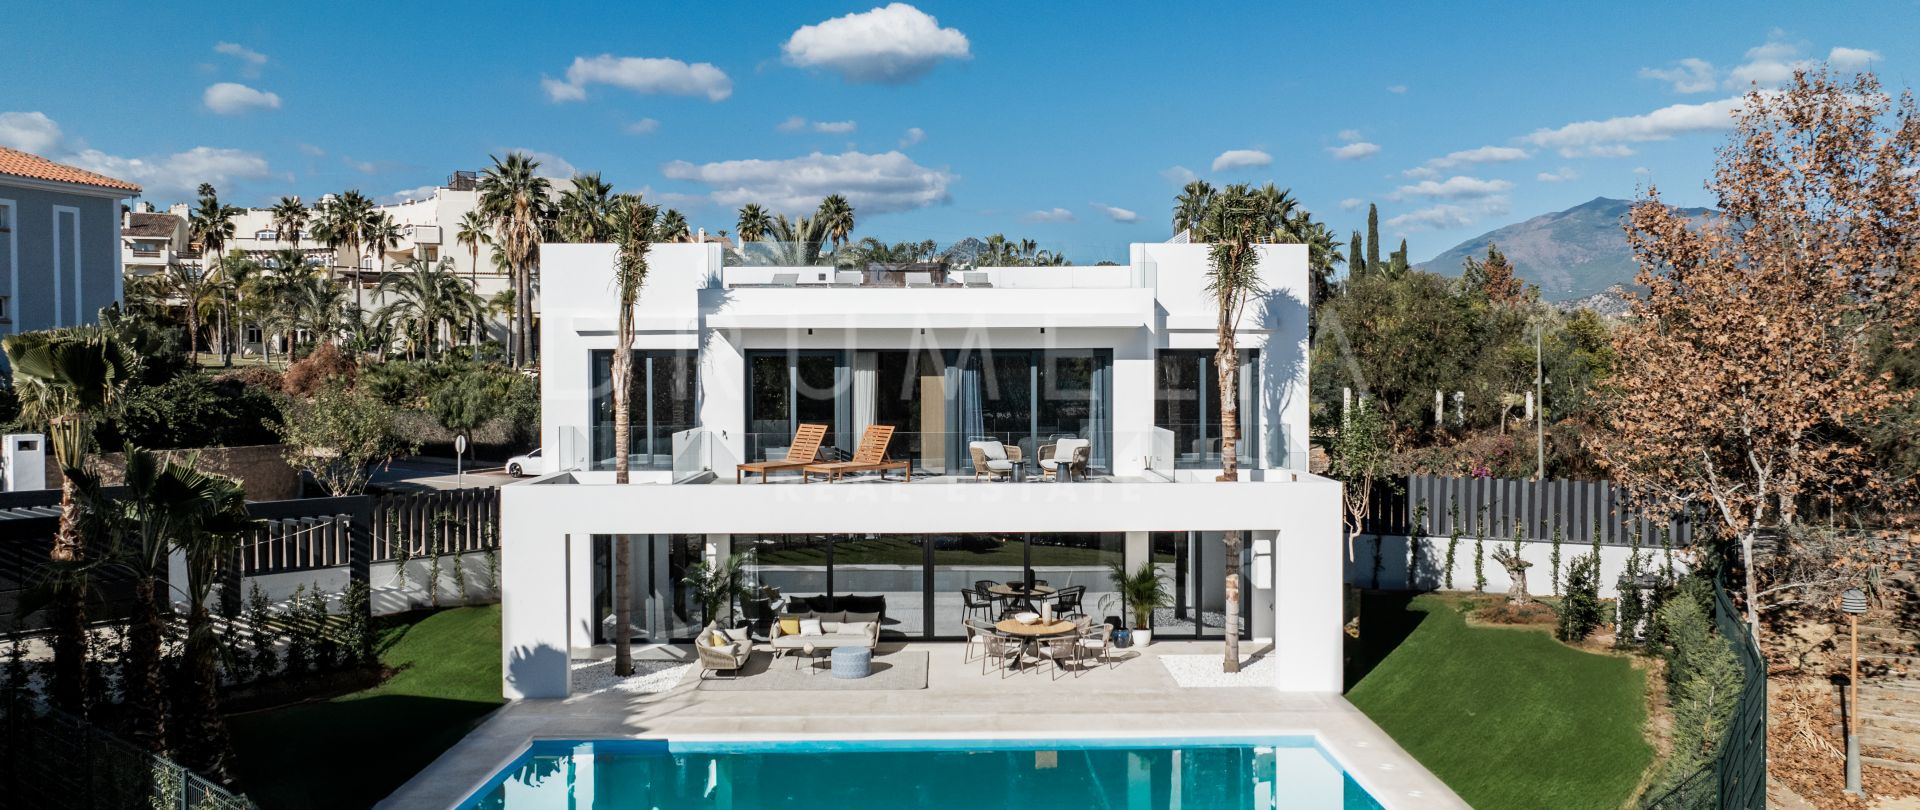 Toutes nouvelles villas modernes et luxueuses à Marbella, sur le nouveau Golden Mile.